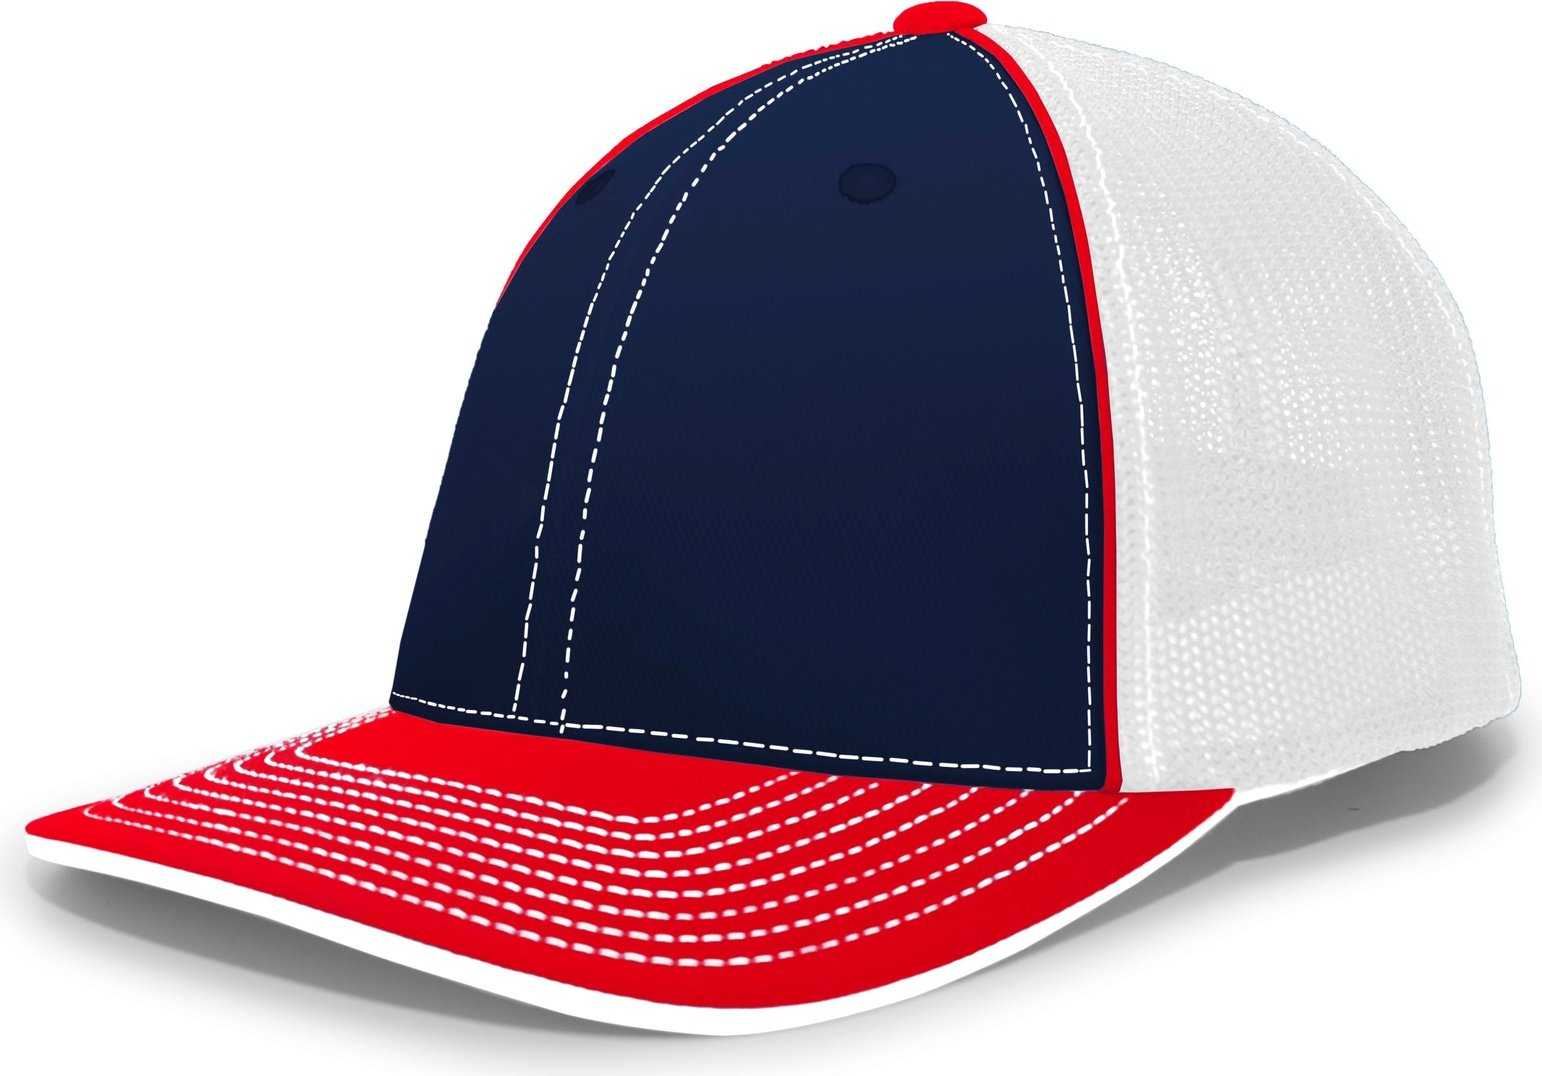 Pacific Headwear 404M Trucker Flexfit Cap - Navy Red - HIT a Double